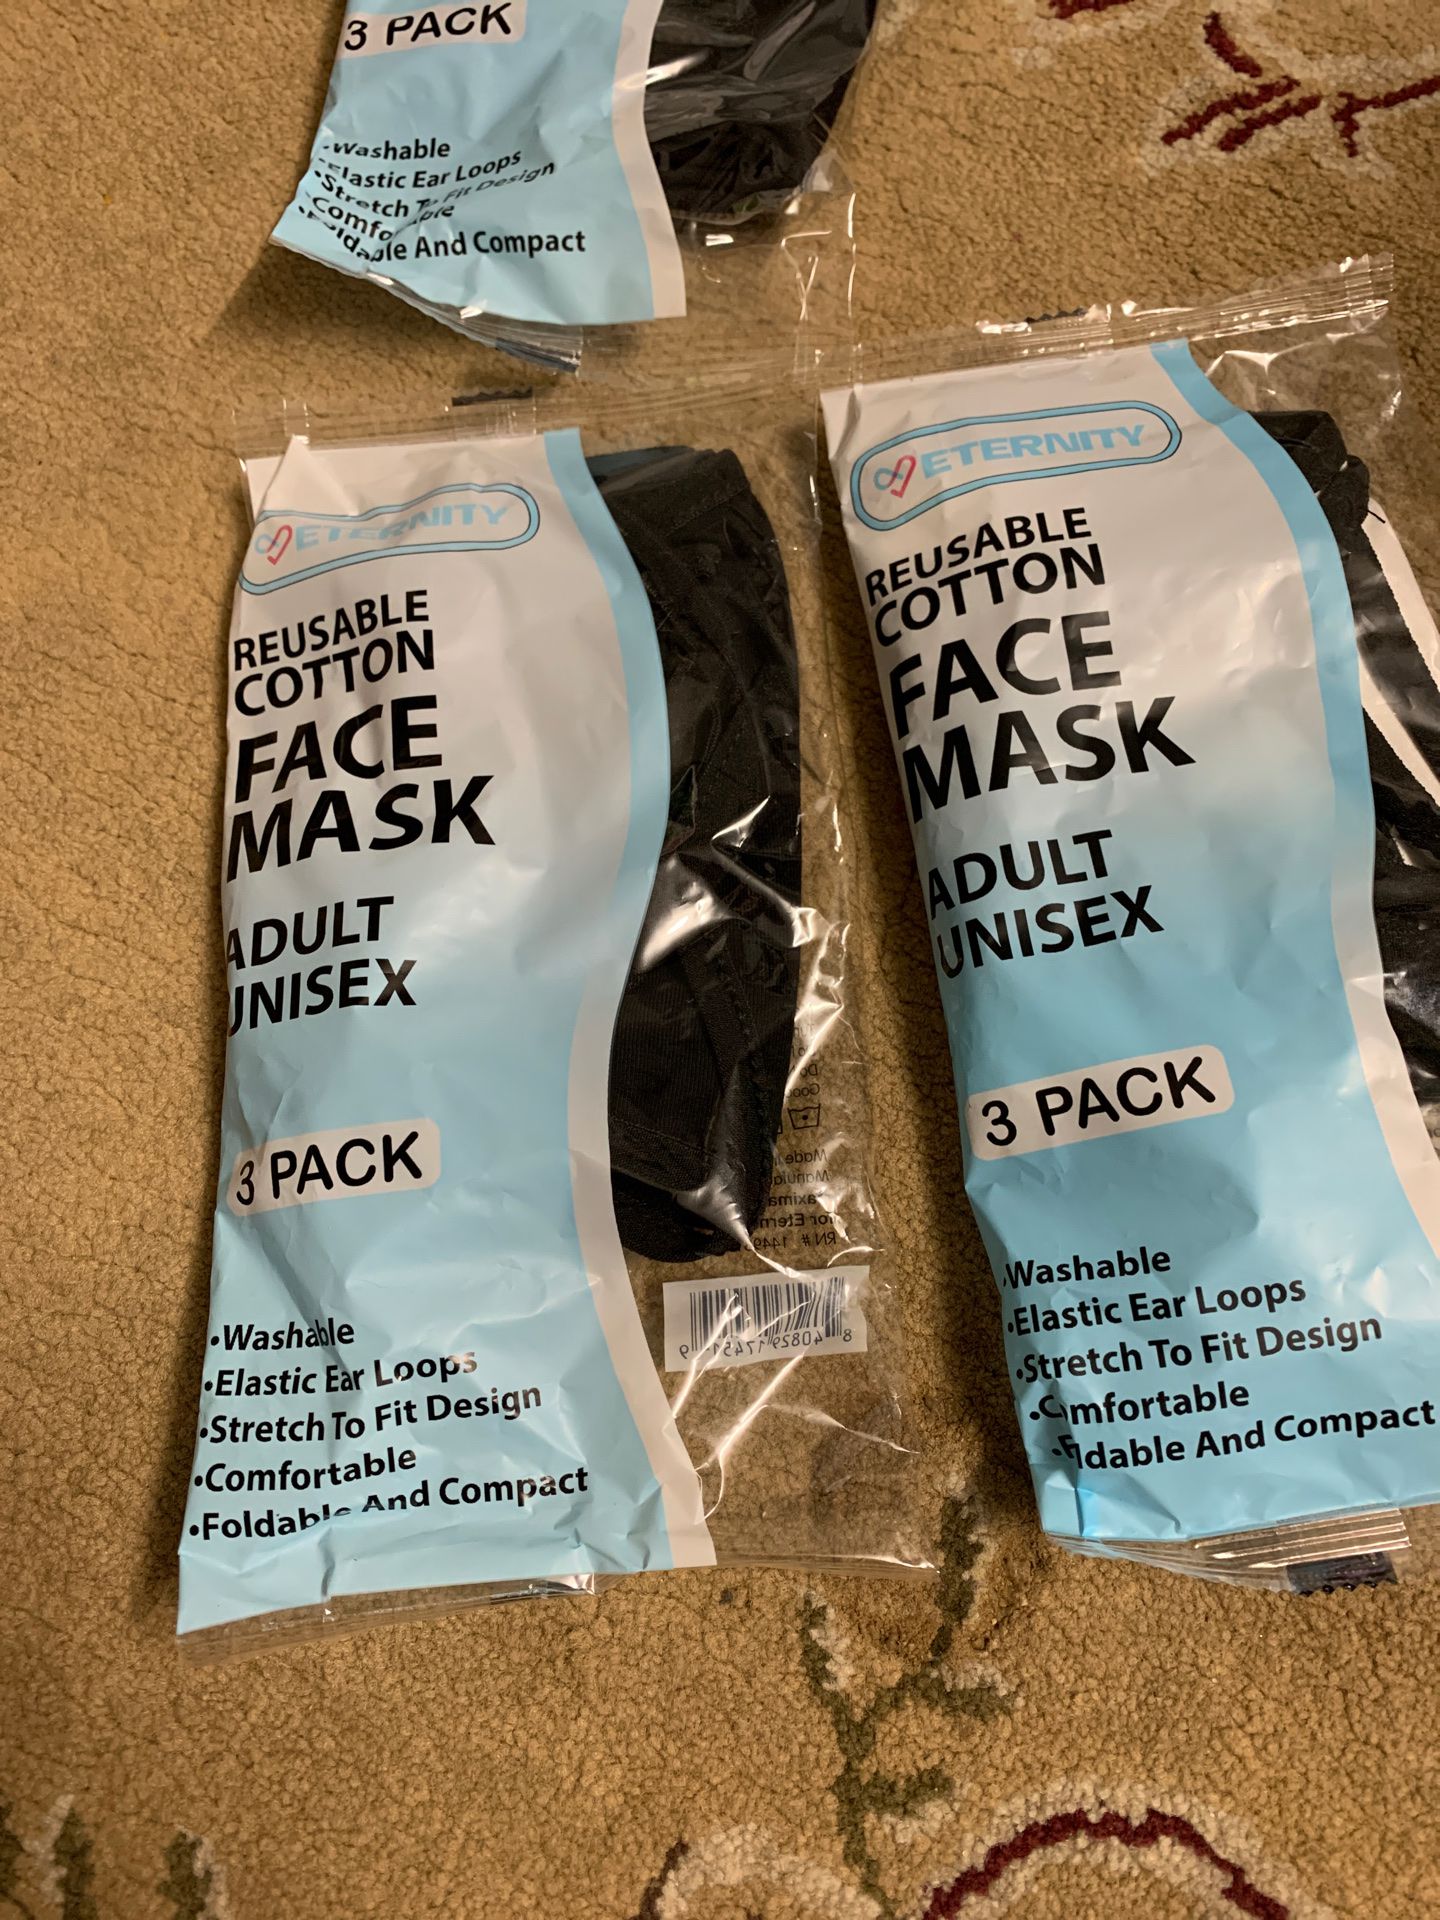 Face mask Adult unisex